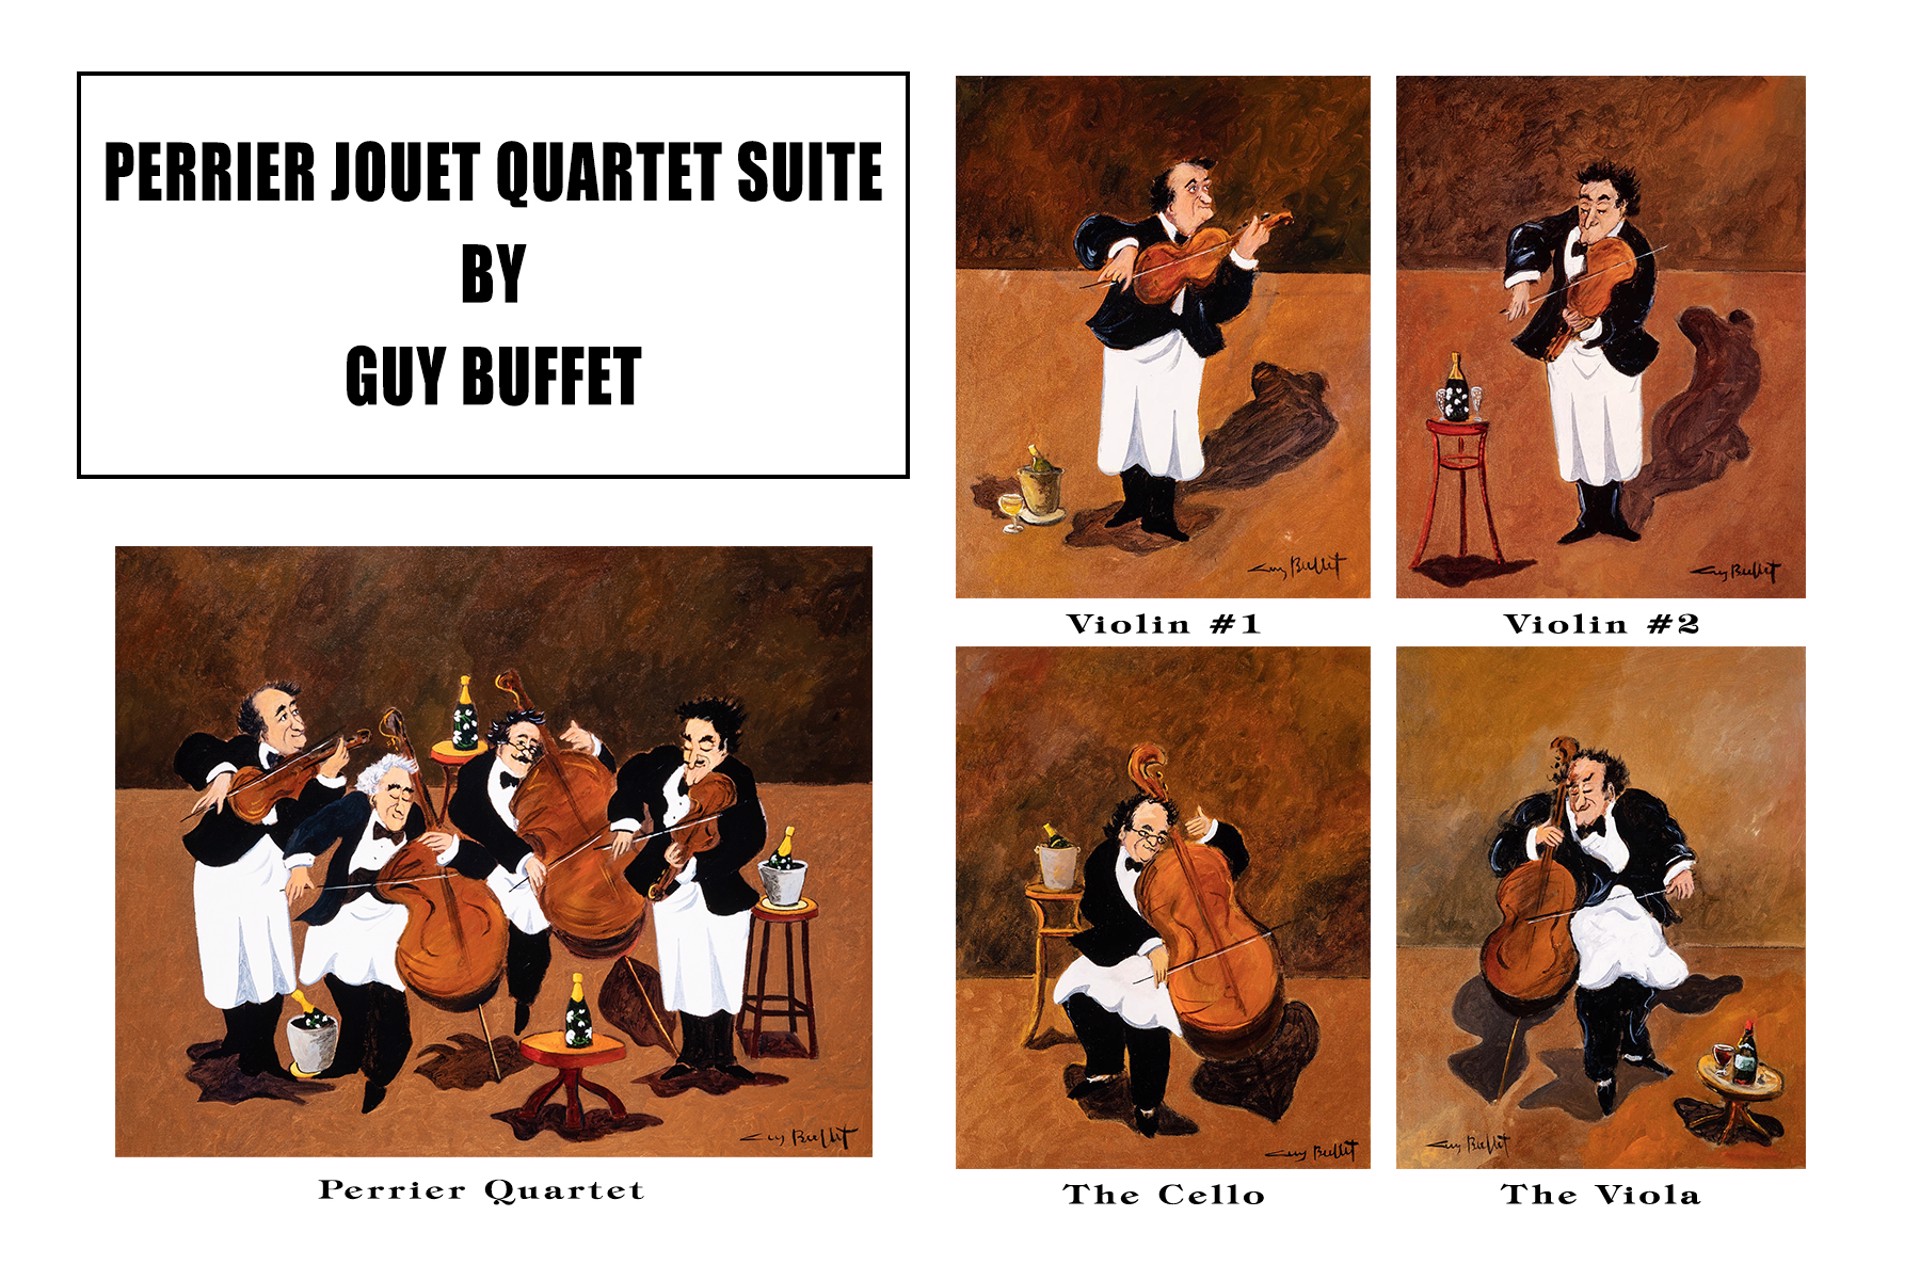 Perrier Jouet Quartet Suite - Violin #1 by Guy Buffet